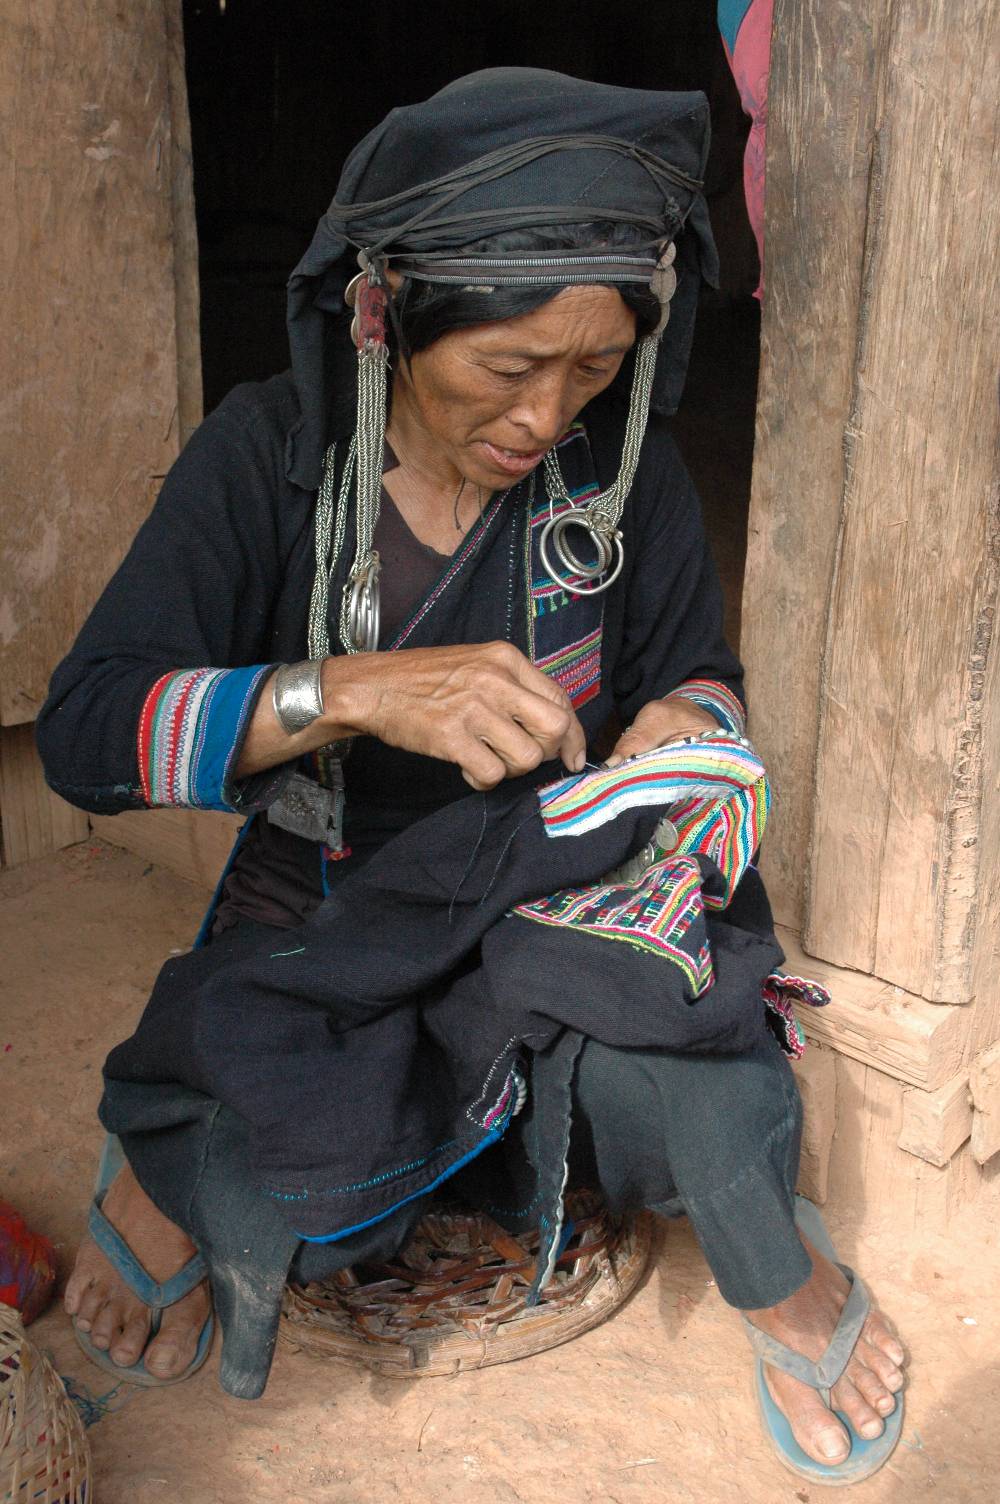 Akha woman stitching in Laos